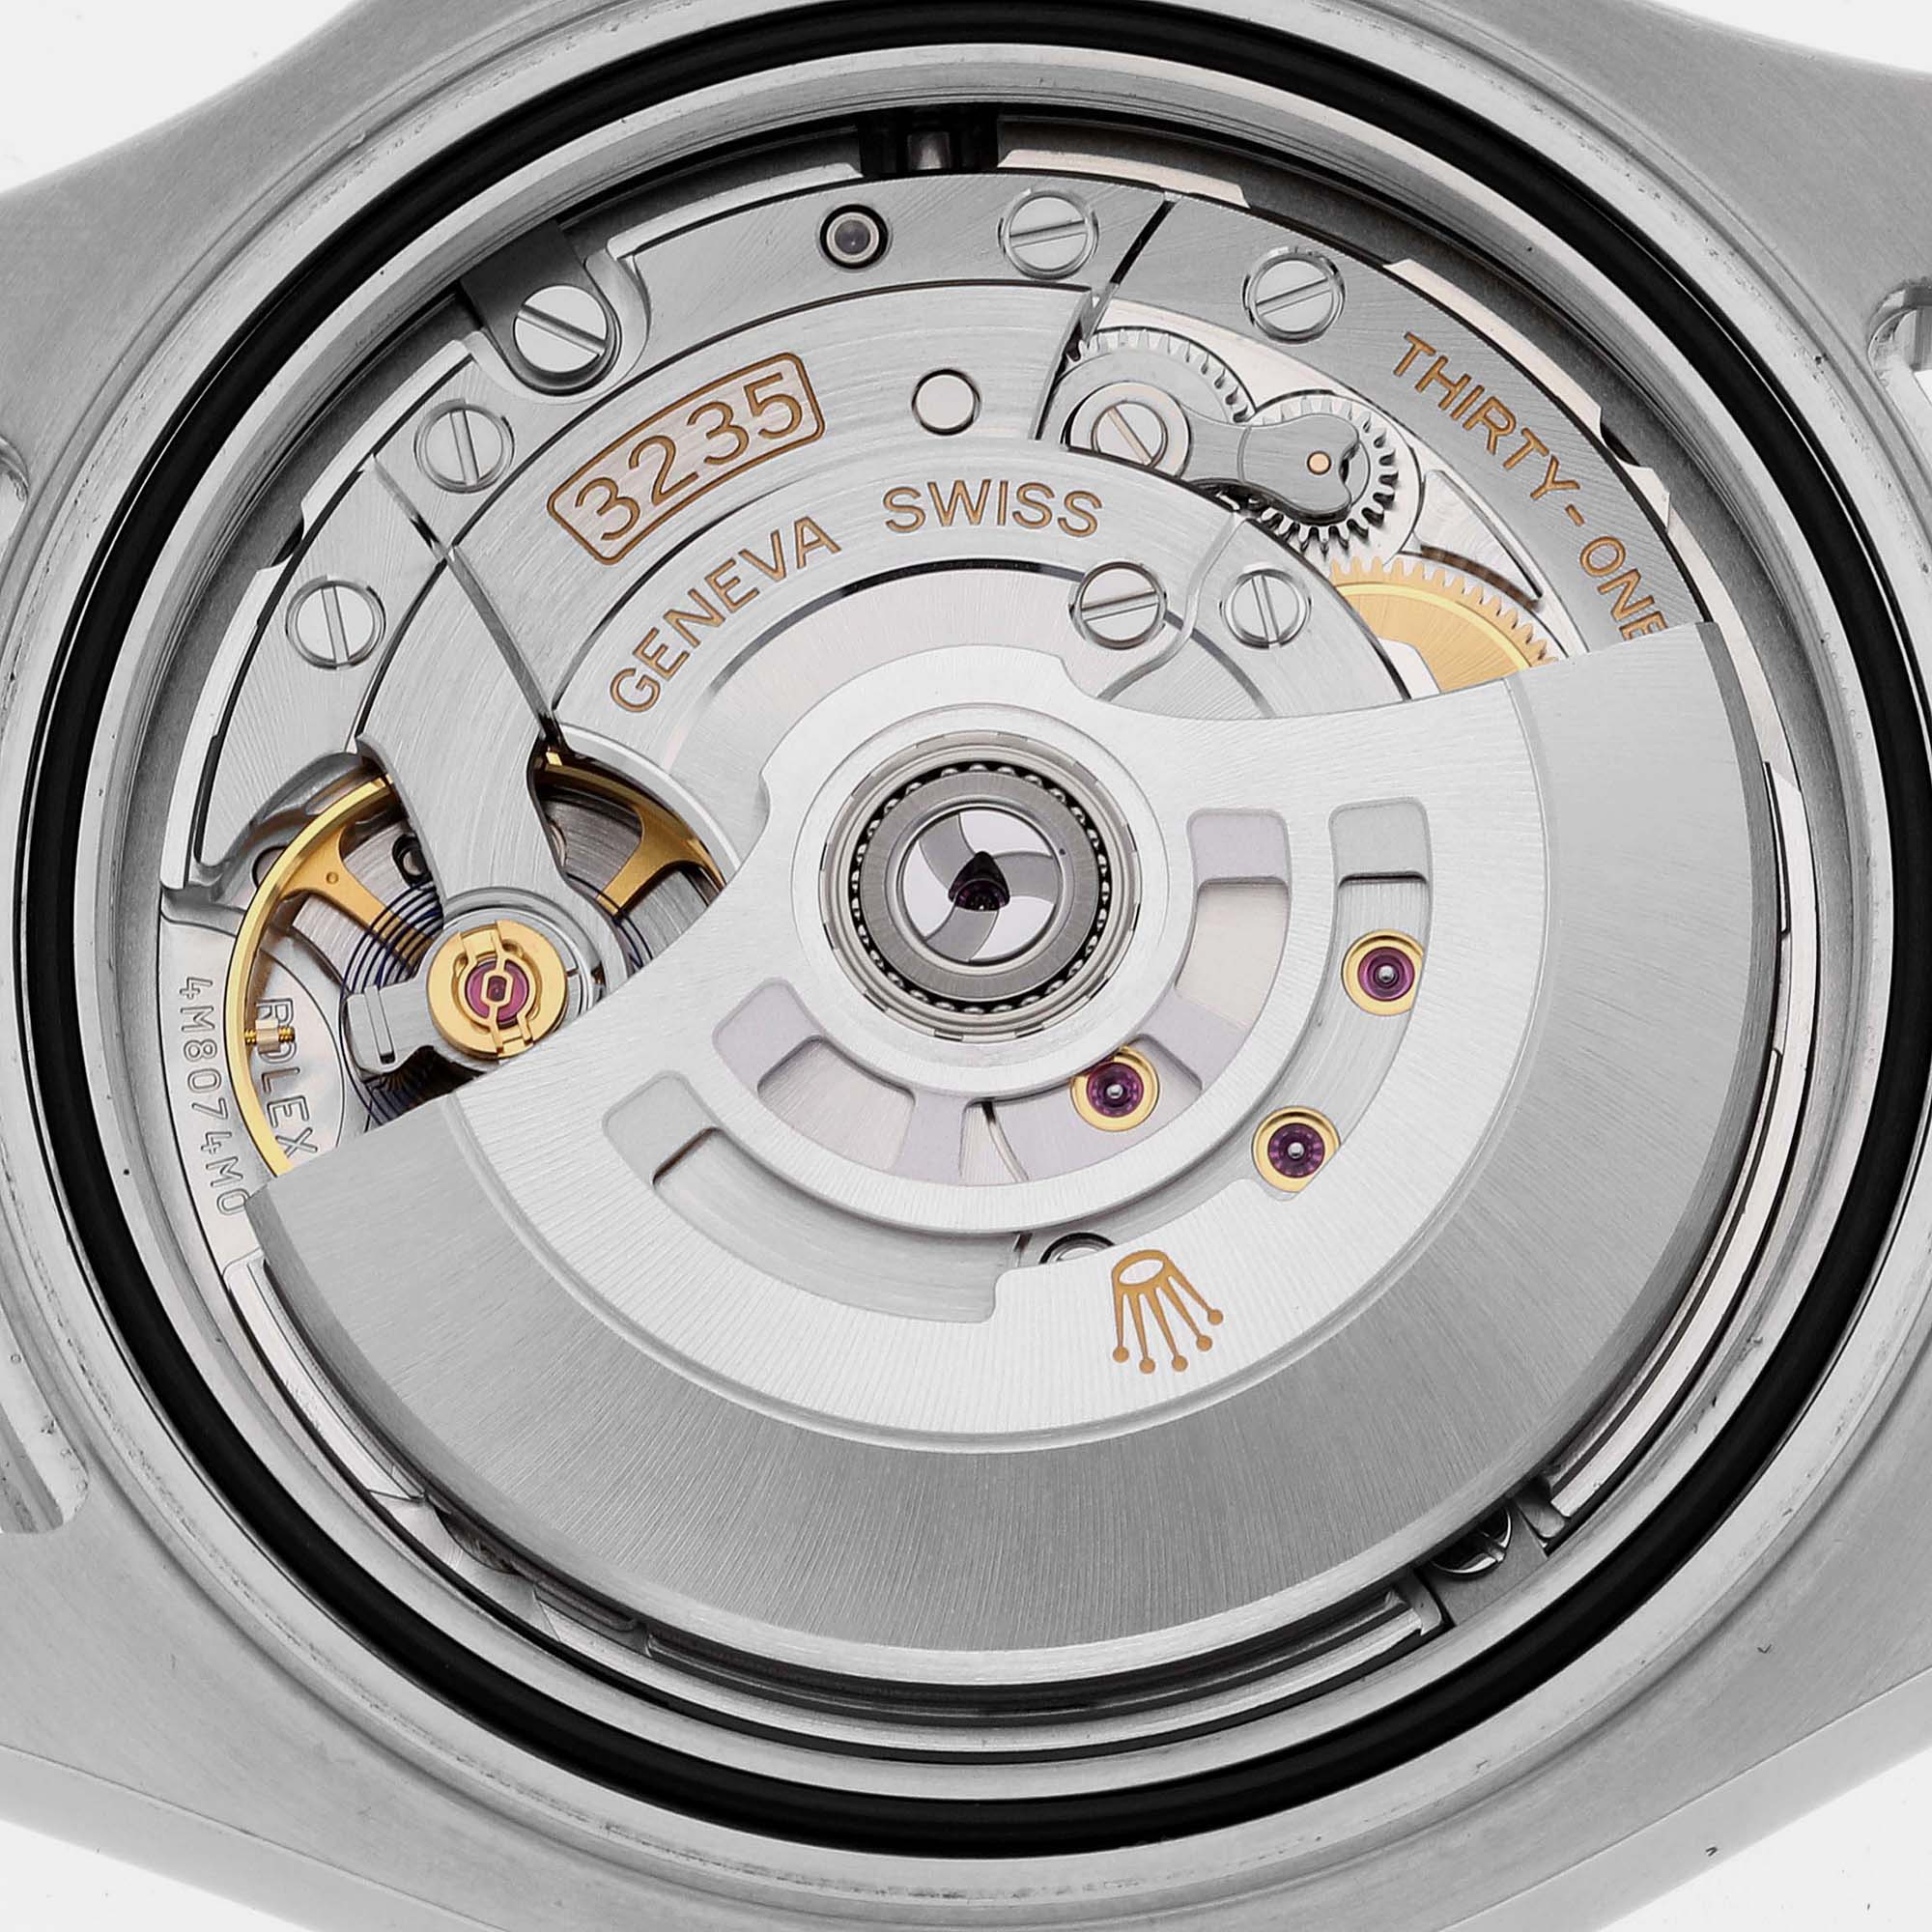 Rolex Yachtmaster Steel Platinum Bezel Rhodium Dial Mens Watch 126622